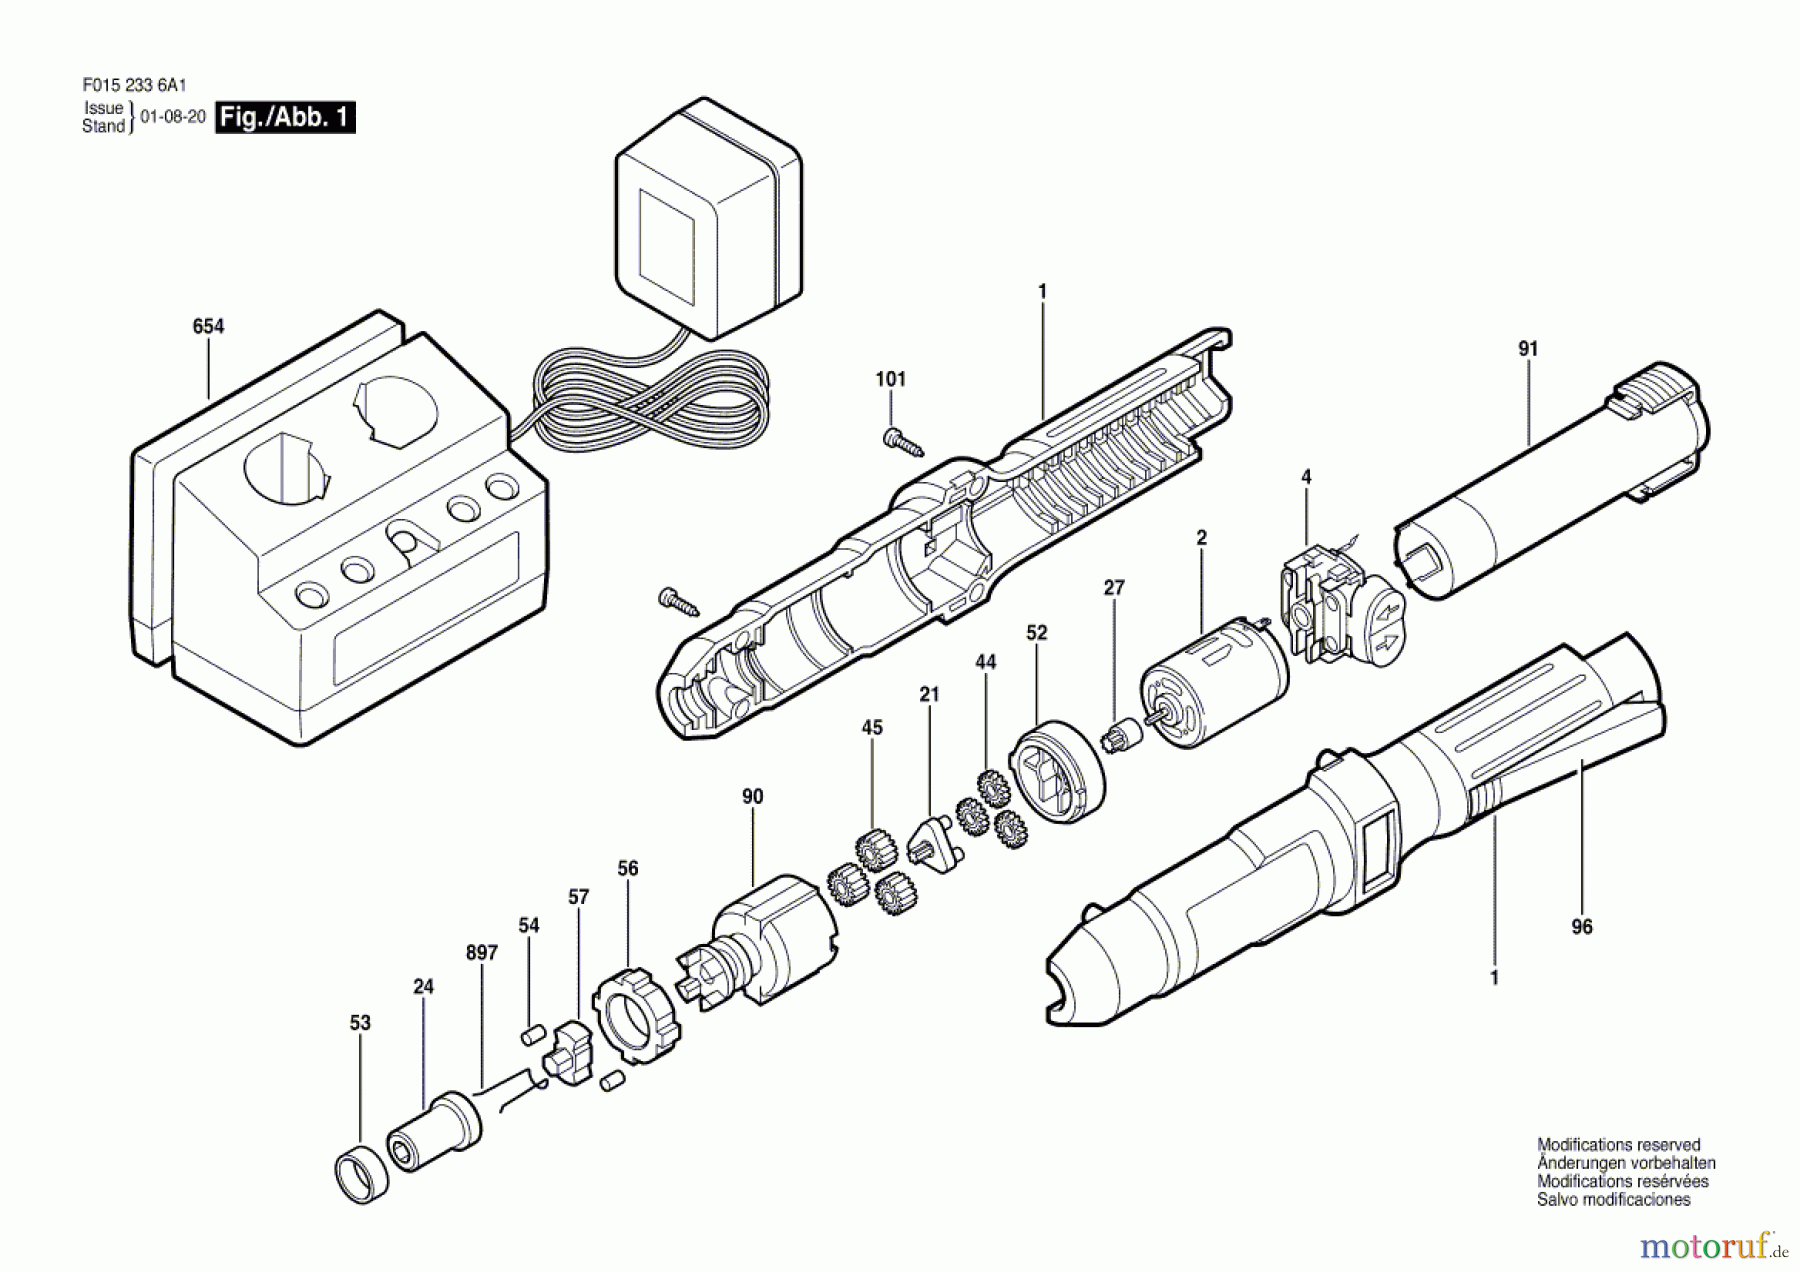  Bosch Werkzeug Bohrschrauber 2336U1 Seite 1